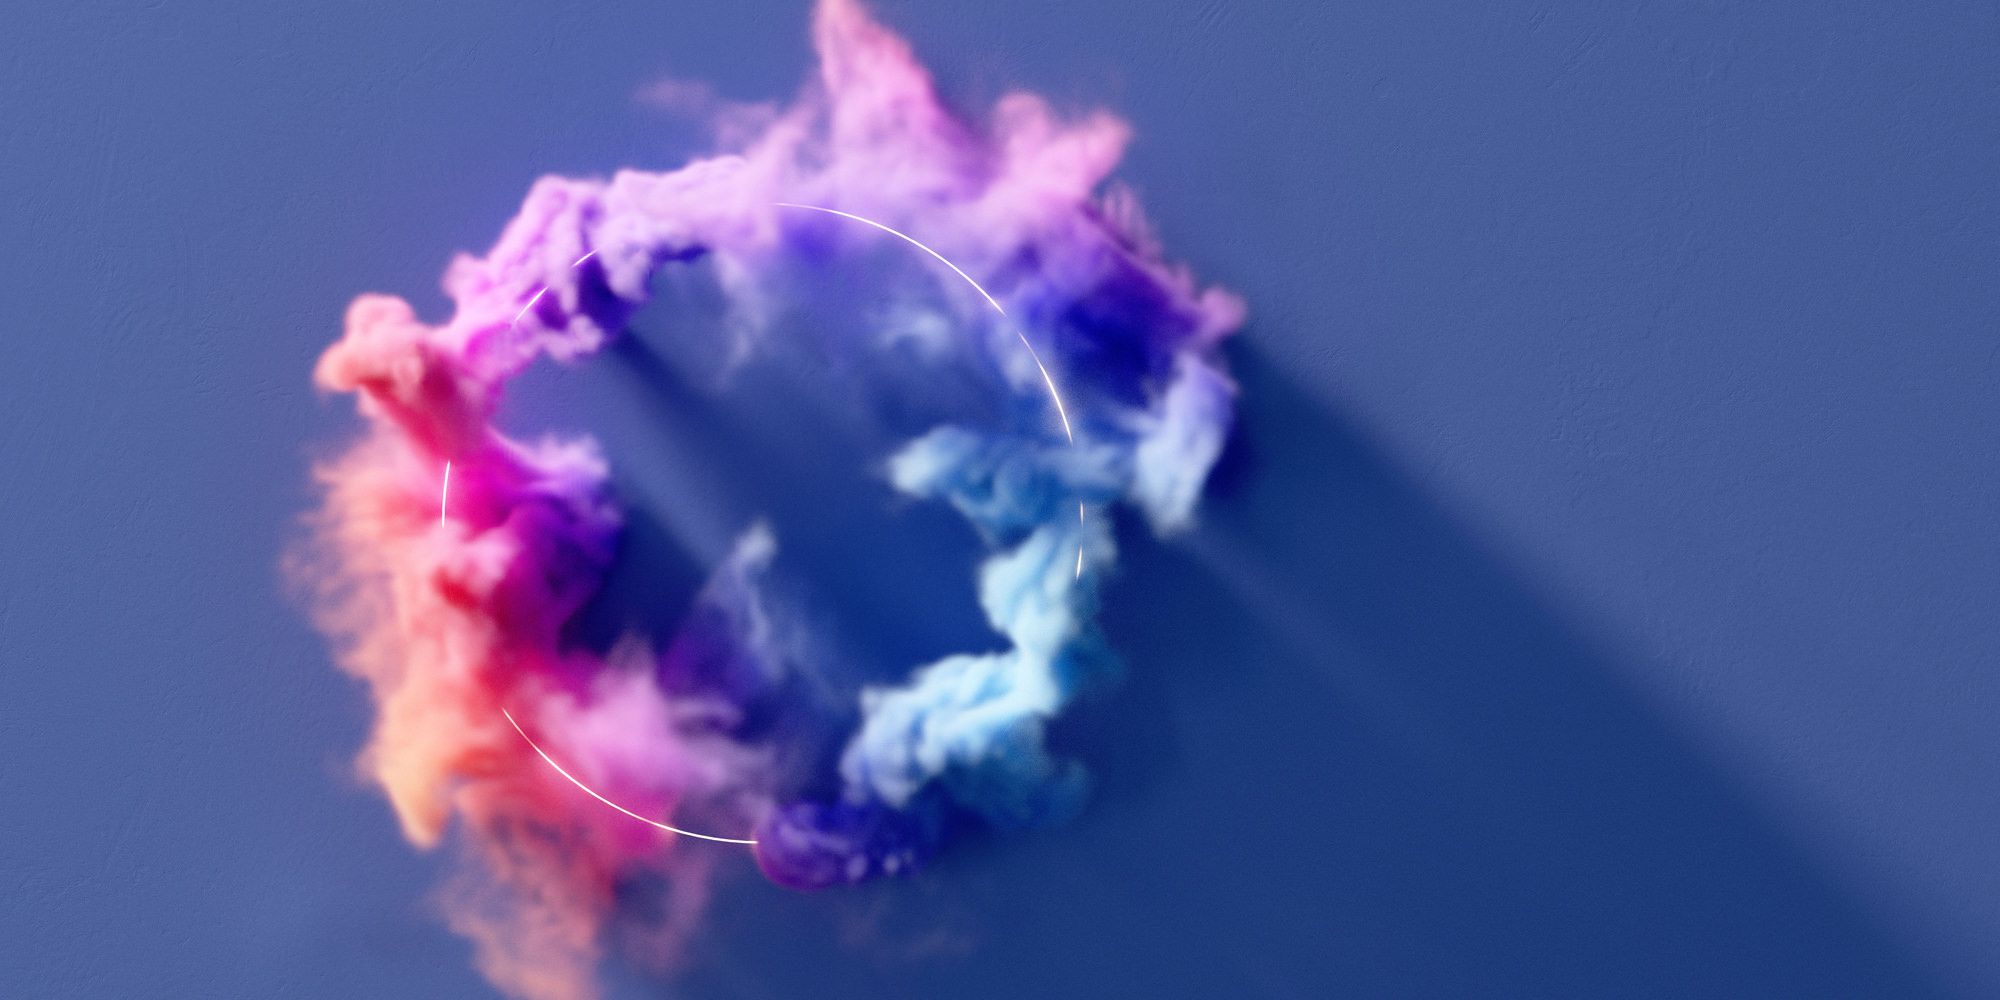 Abstraktes Bild mit einem Ring und Farbwolken zur Verdeutlichung von Corporate Design